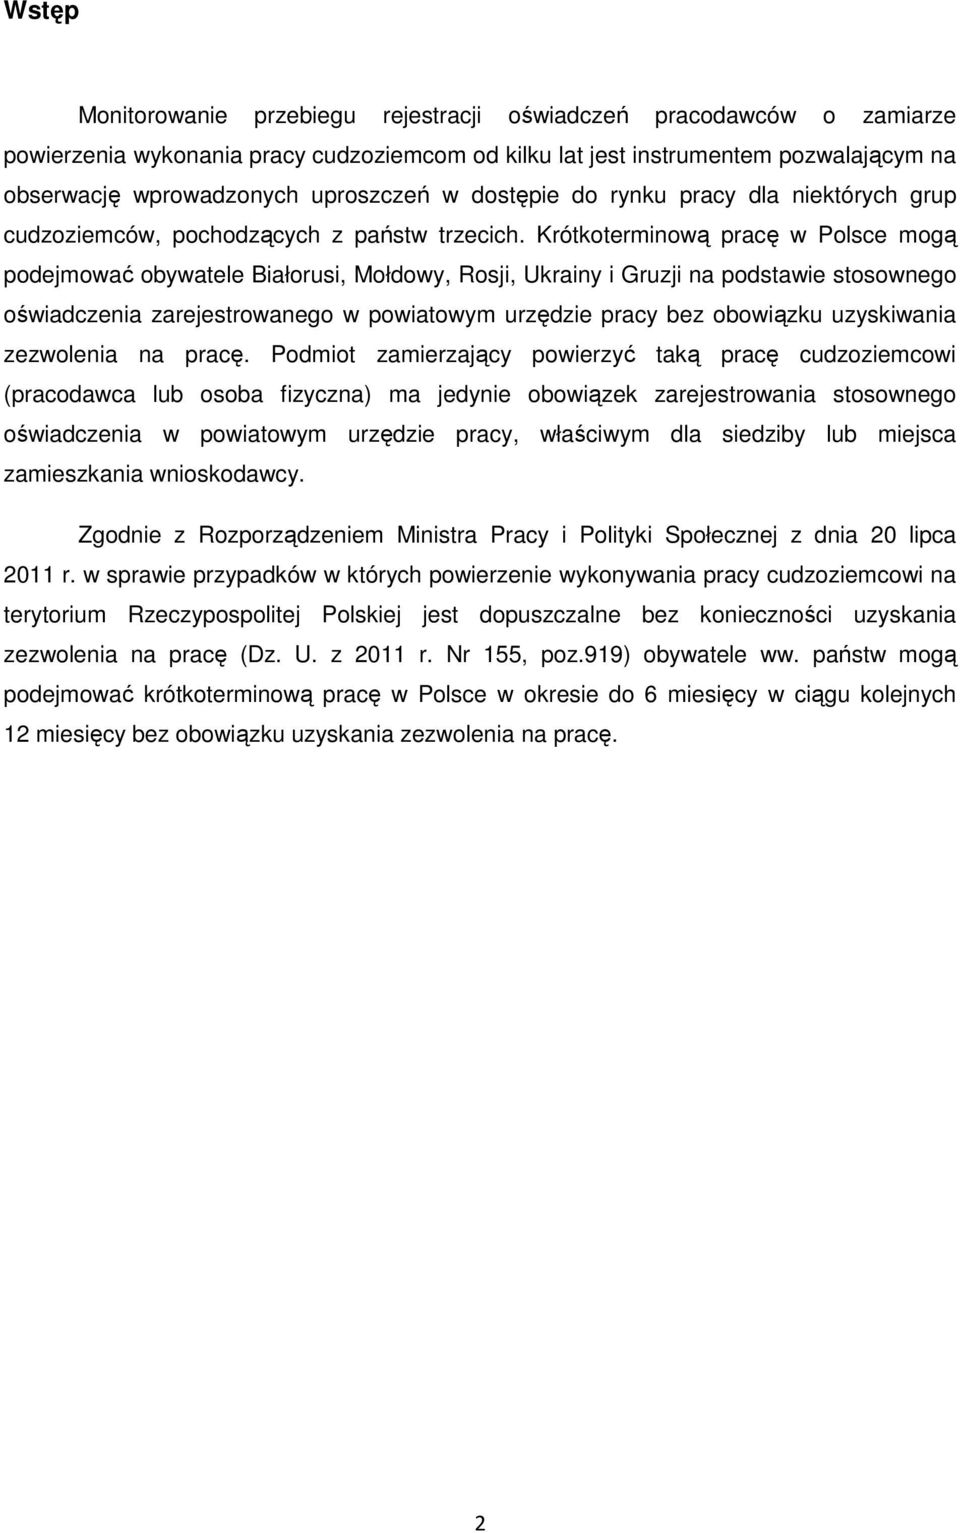 Krótkoterminową pracę w Polsce mogą podejmować obywatele Białorusi, Mołdowy, Rosji, Ukrainy i Gruzji na podstawie stosownego oświadczenia zarejestrowanego w powiatowym urzędzie pracy bez obowiązku